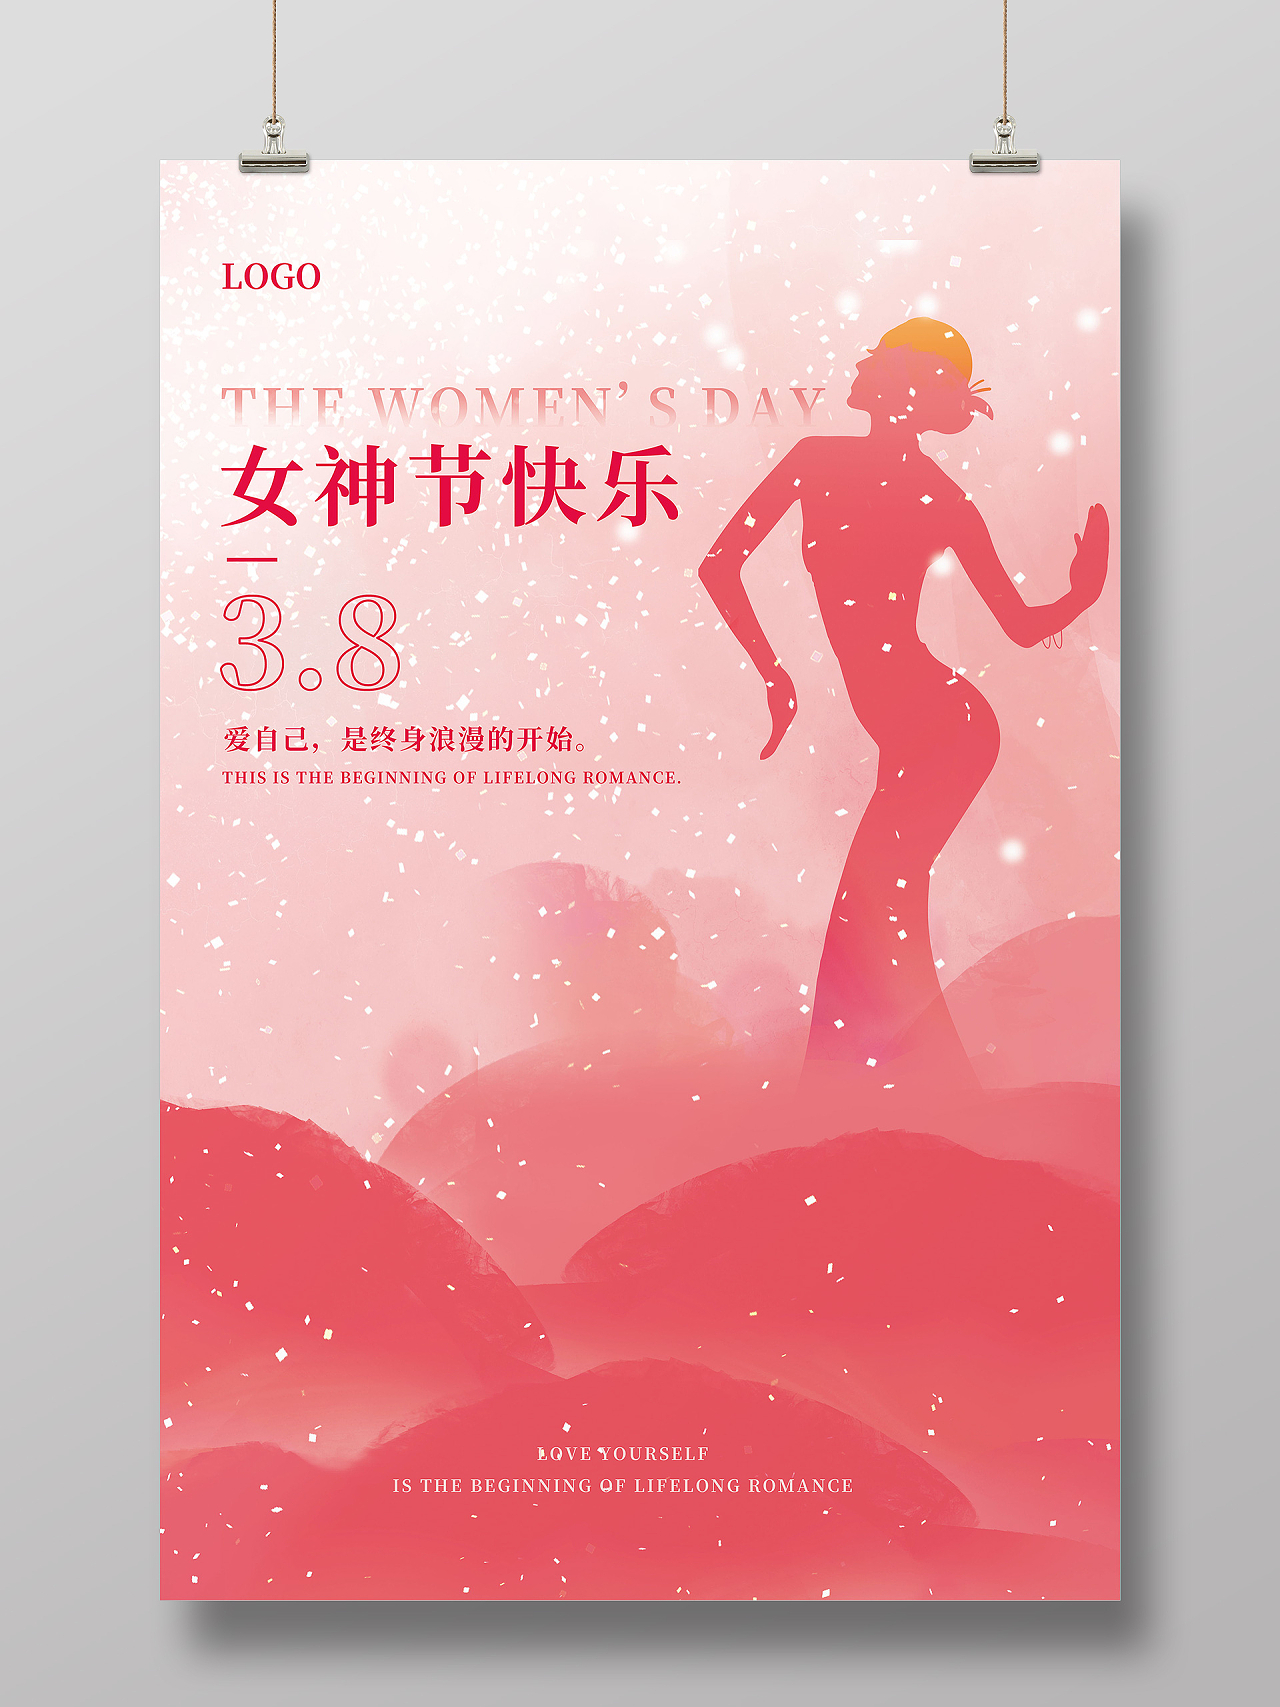 38女神节妇女节女王节海报设计38三八妇女节